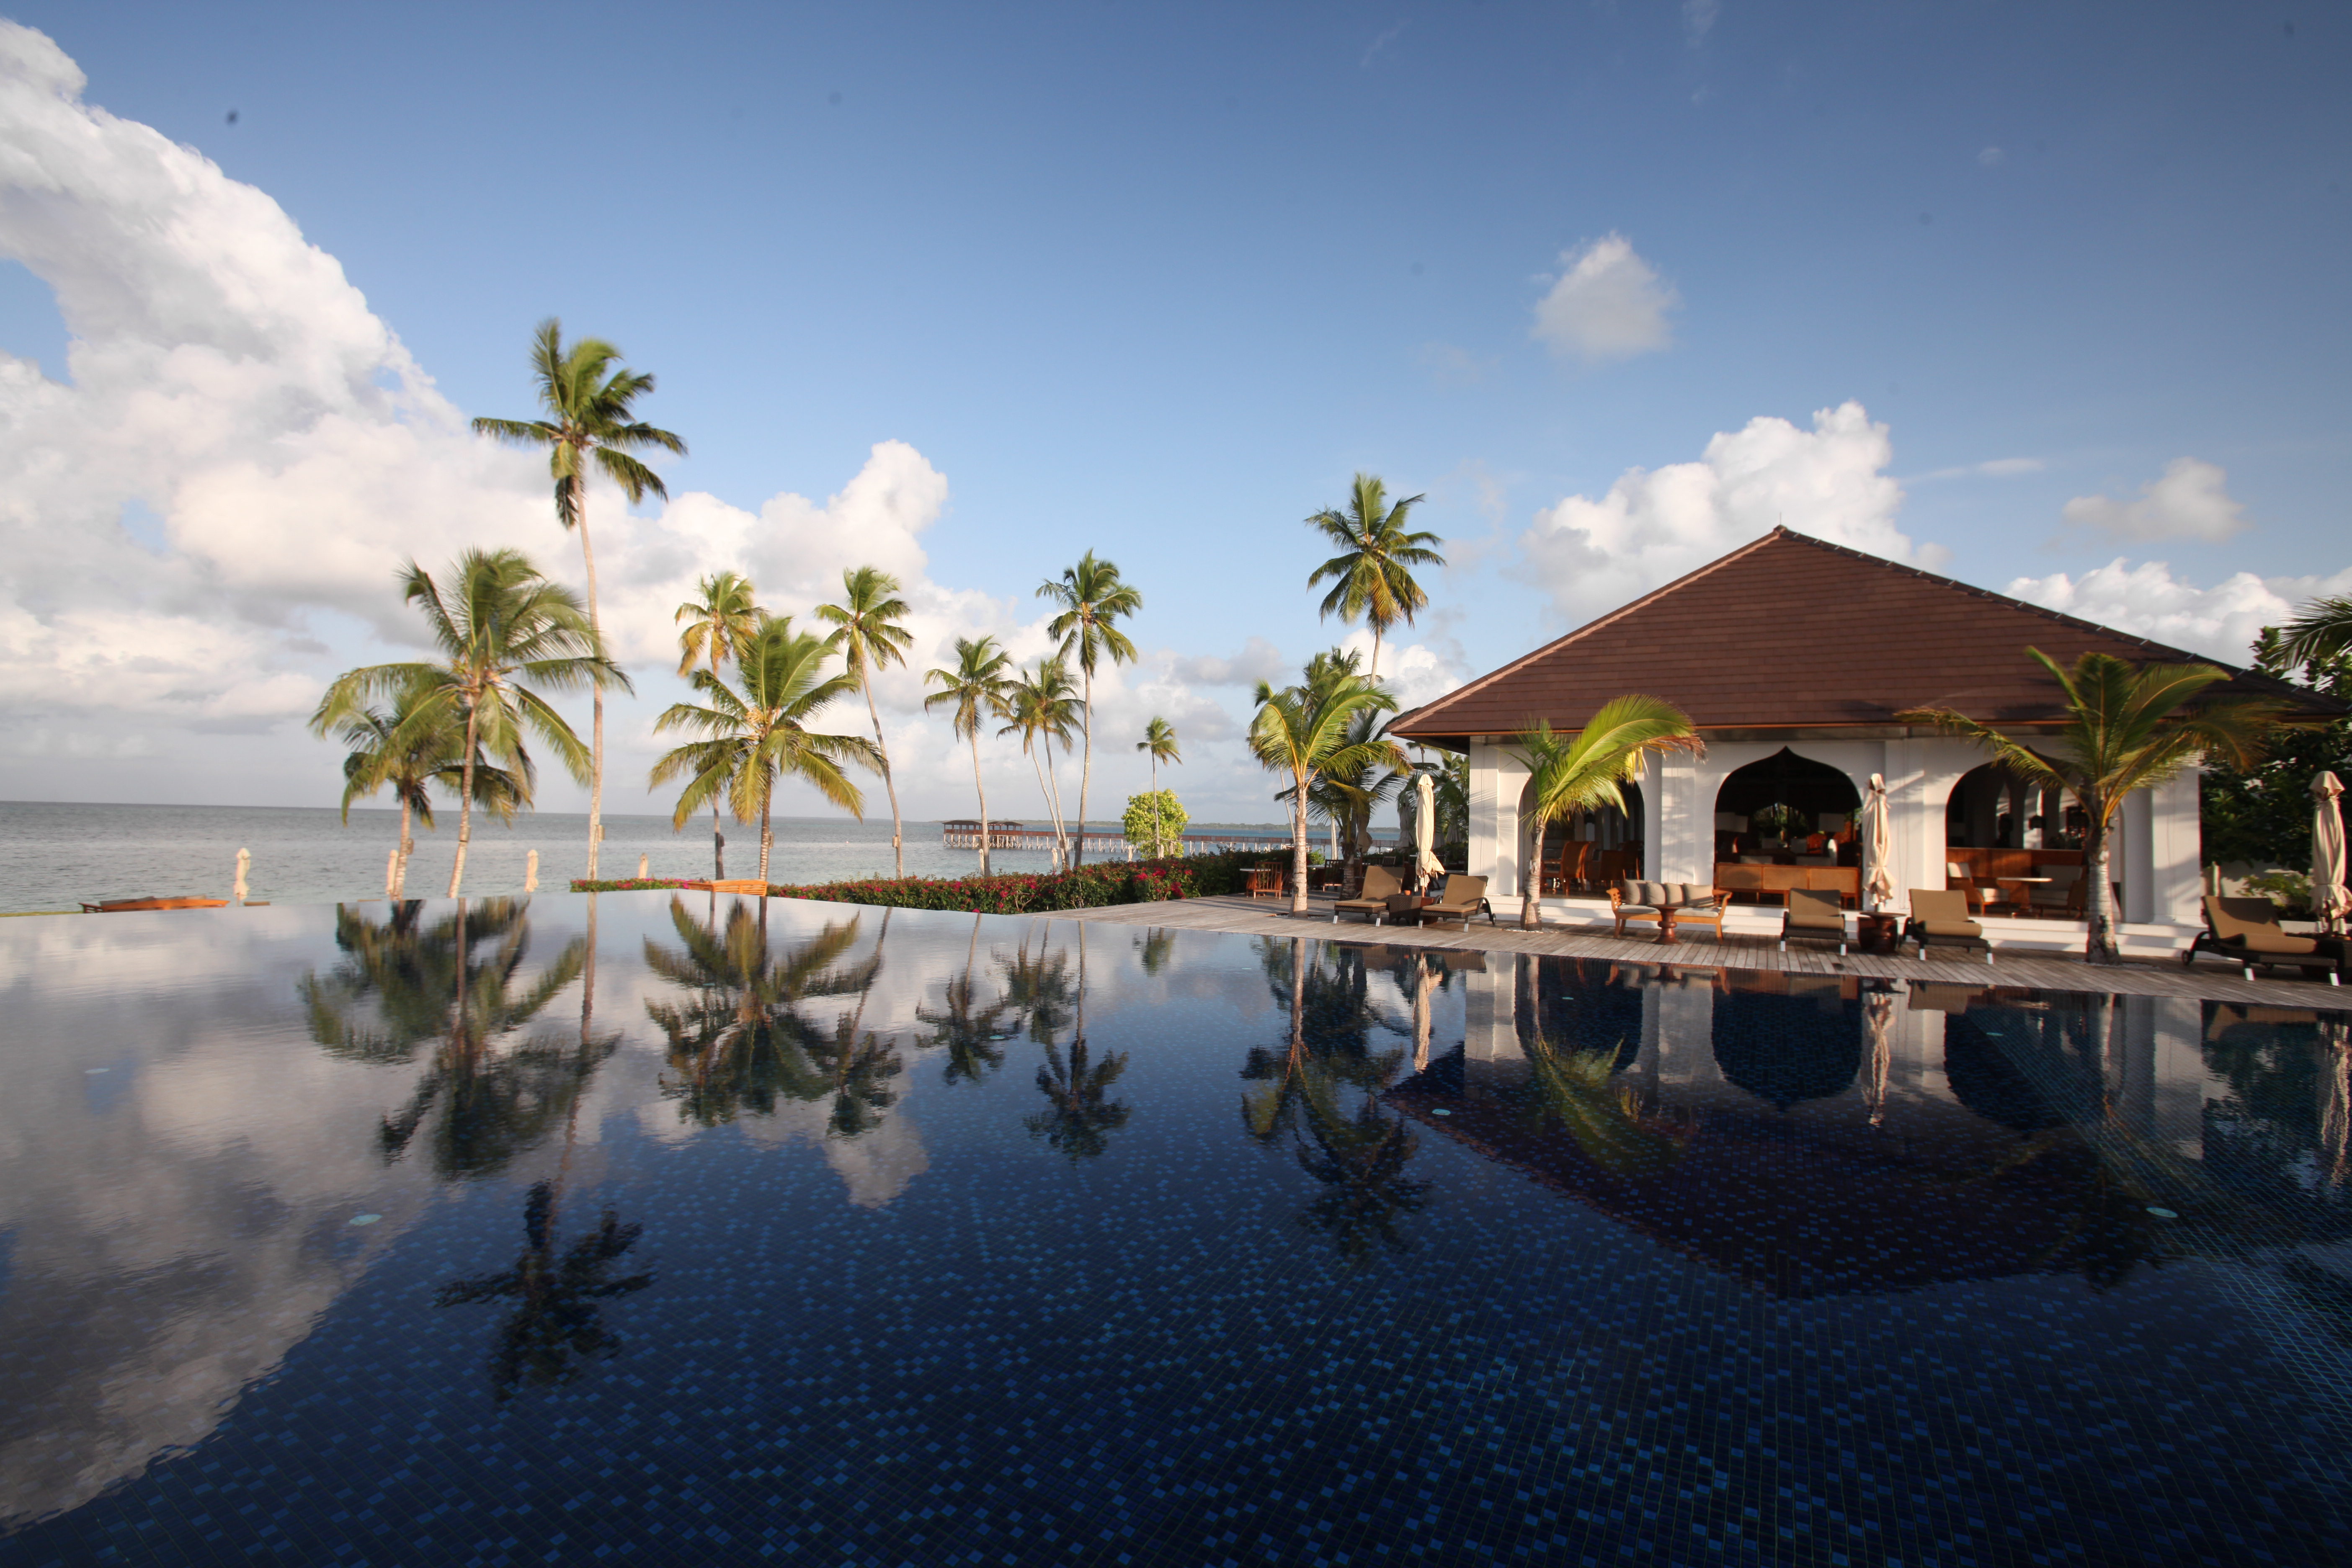 Zanzibar Travel Guide | Zanzibar Hotels | Best Things to Do in Zanzibar | The Residence